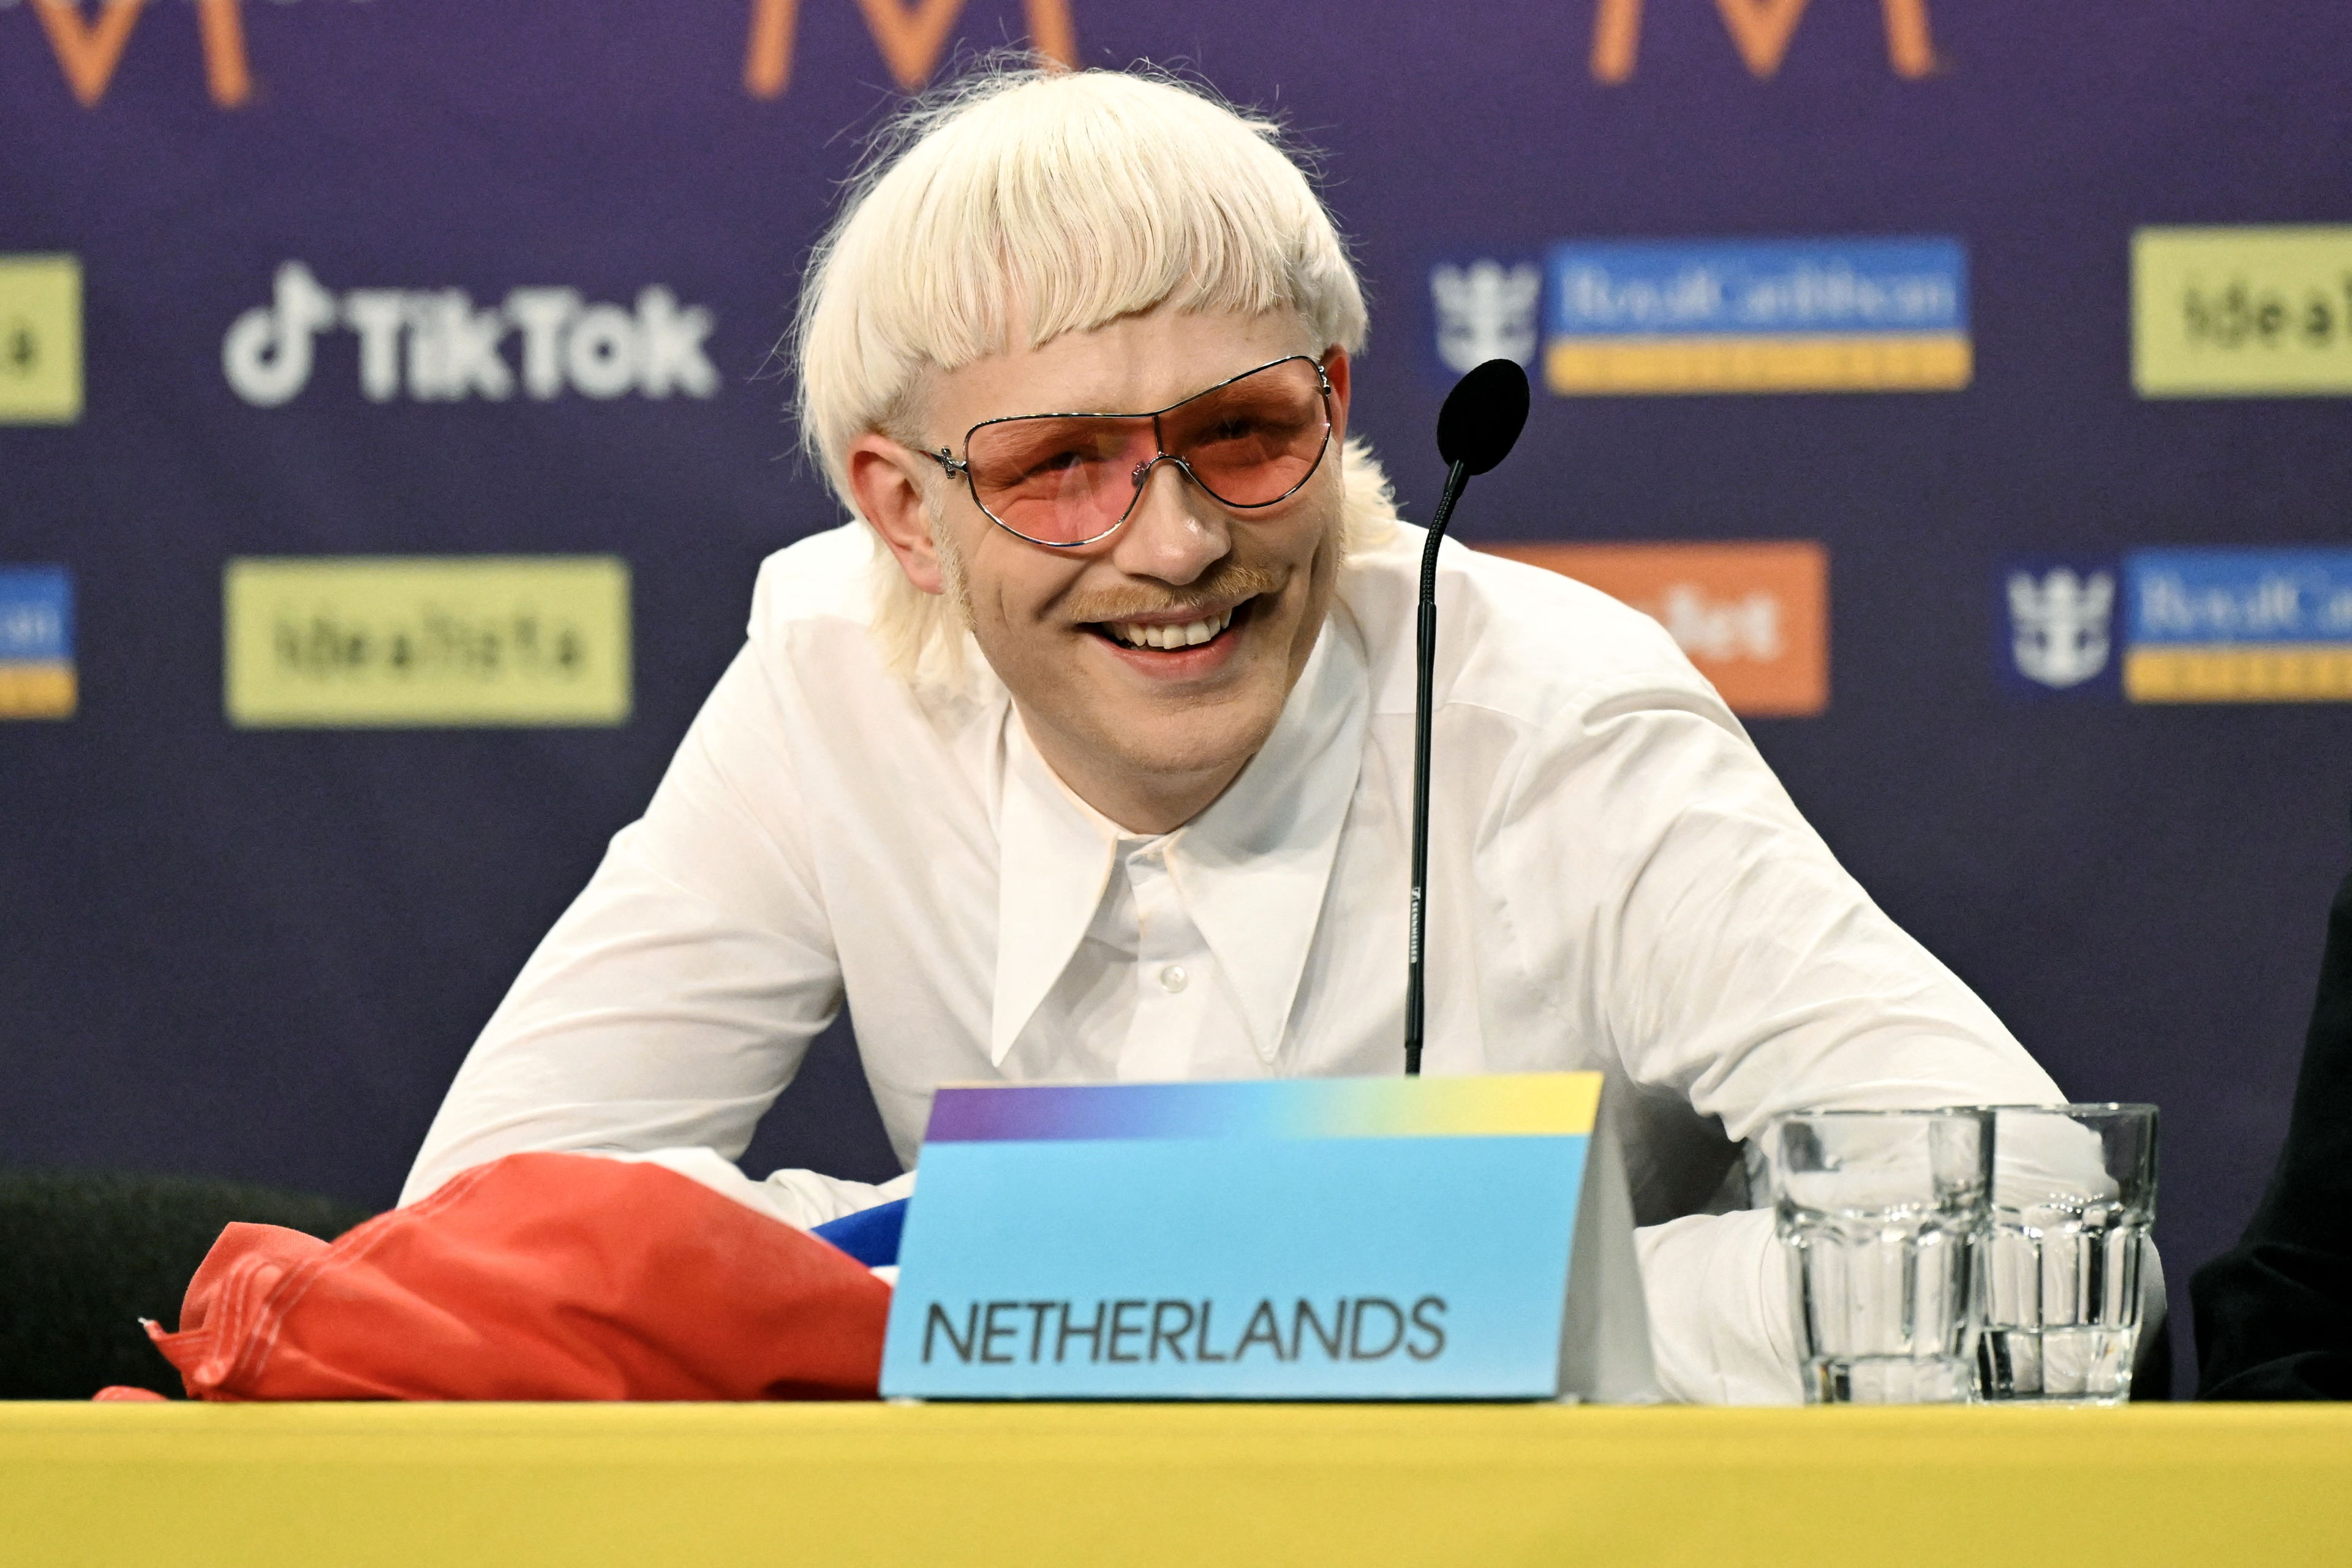 Joost Klein allegedly threatened Eurovision employee